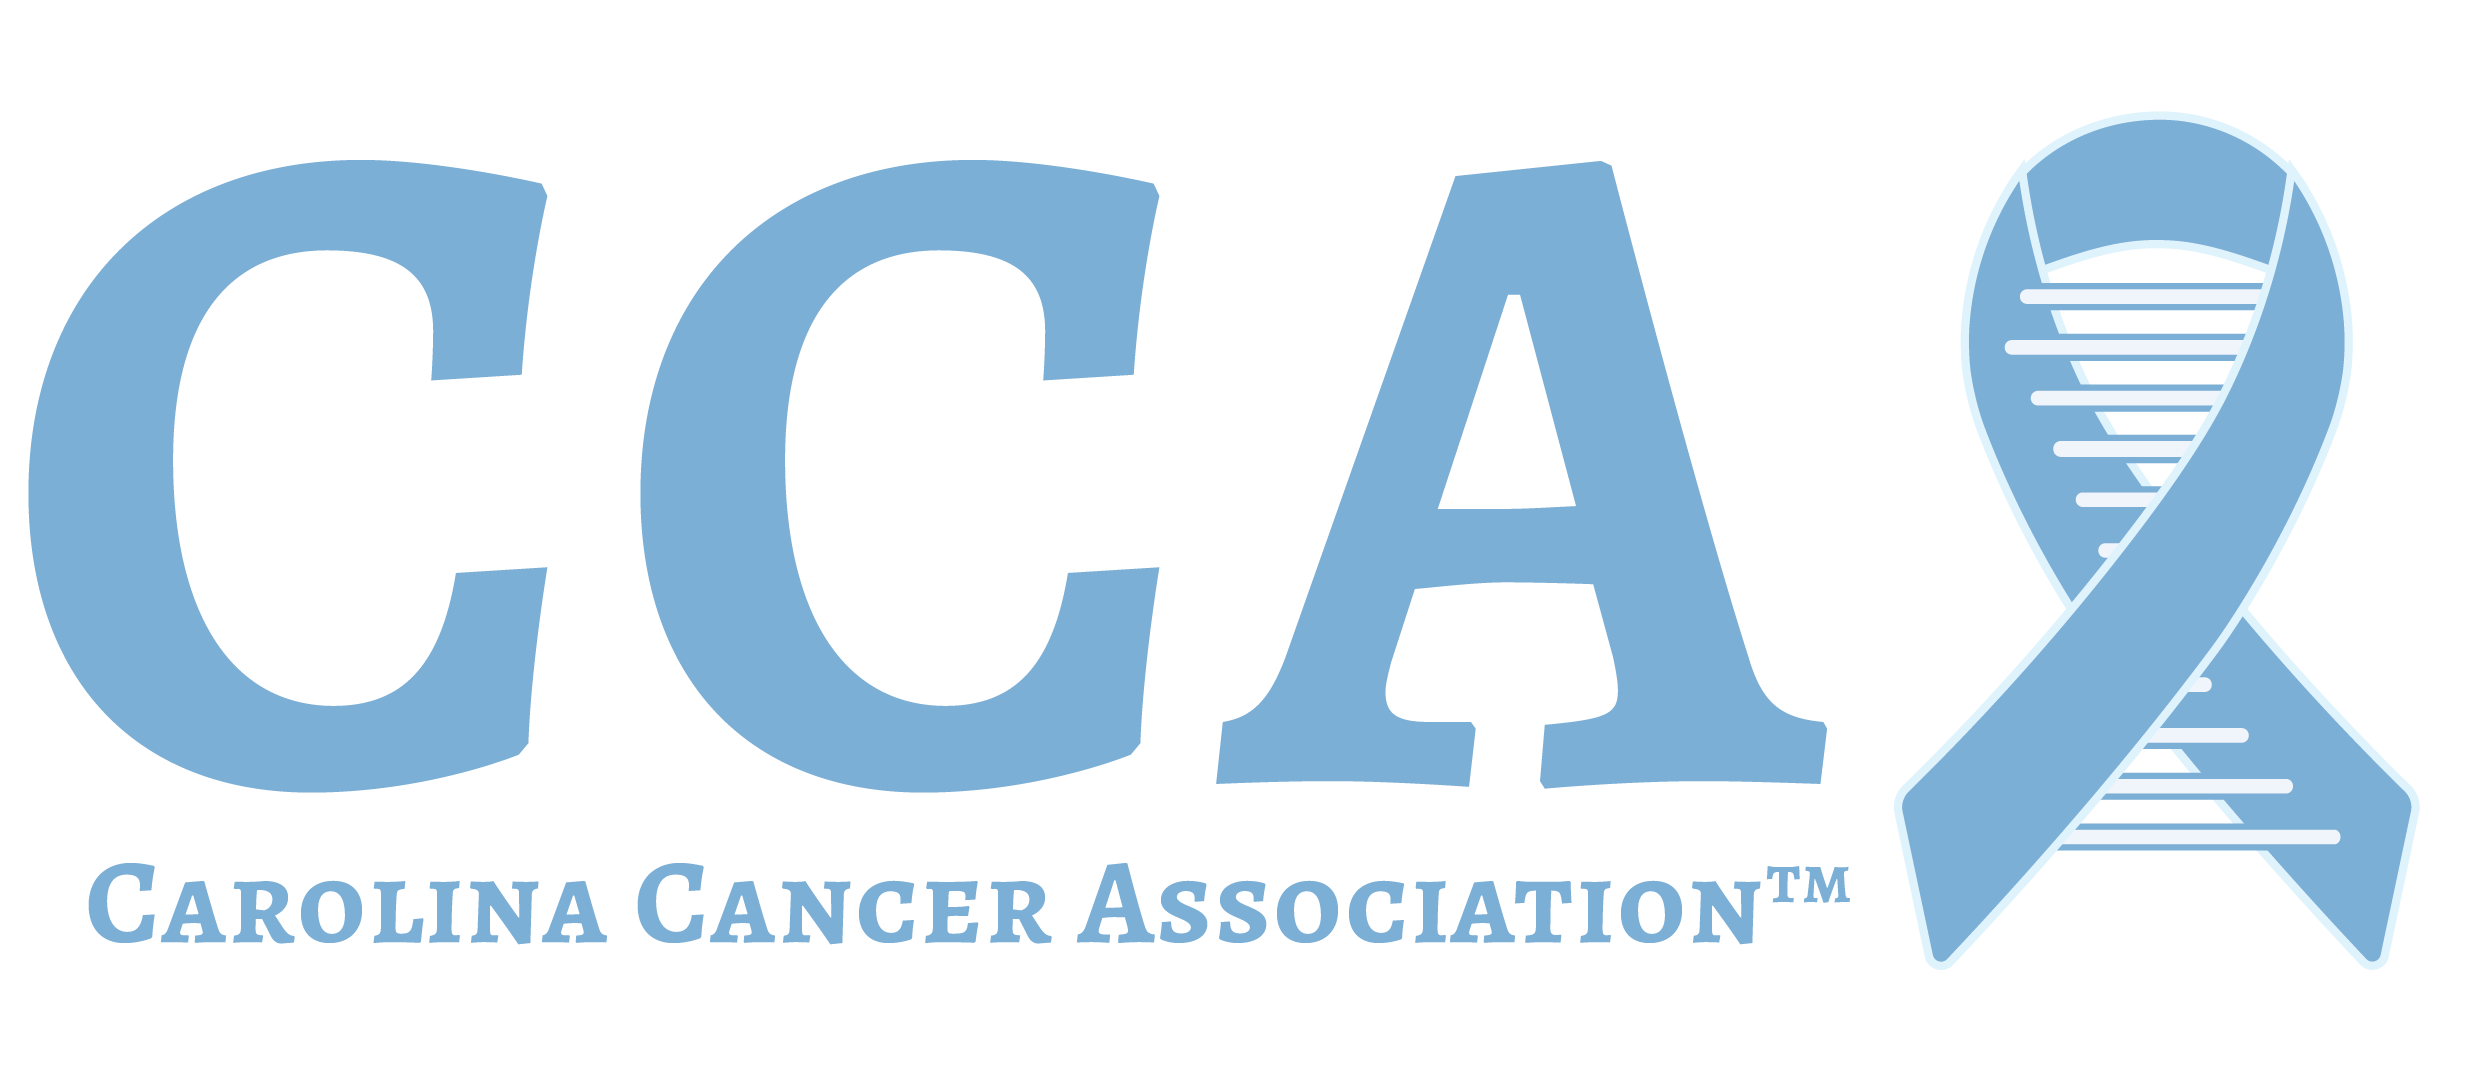 Carolina Cancer Association Acronym Logo